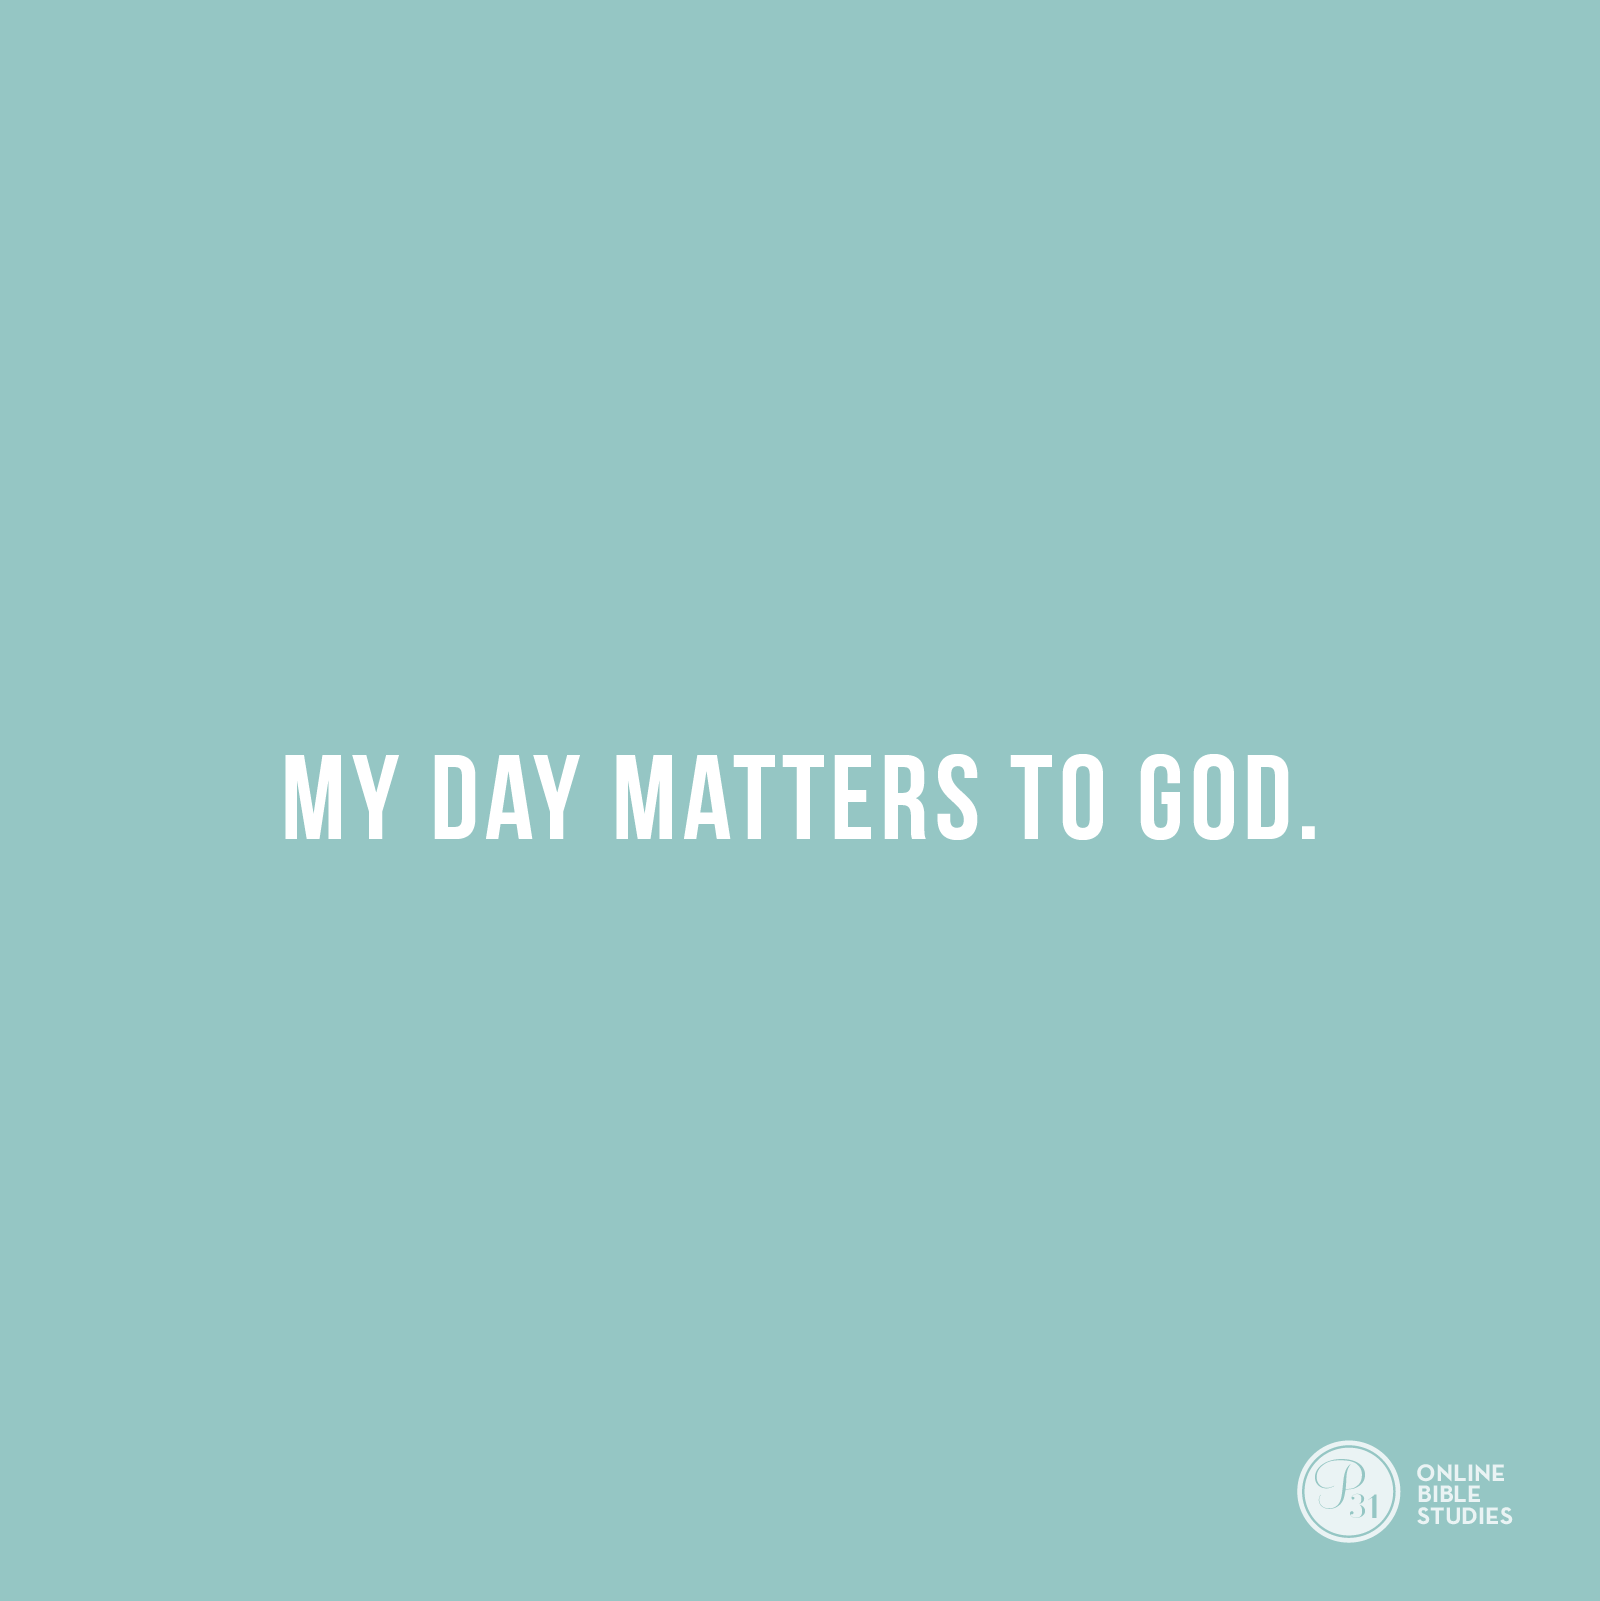  "My day matters to God." - Craig Groeschel  #DangerousPrayers | Proverbs 31 Online Bible Studies Week 6 #P31OBS